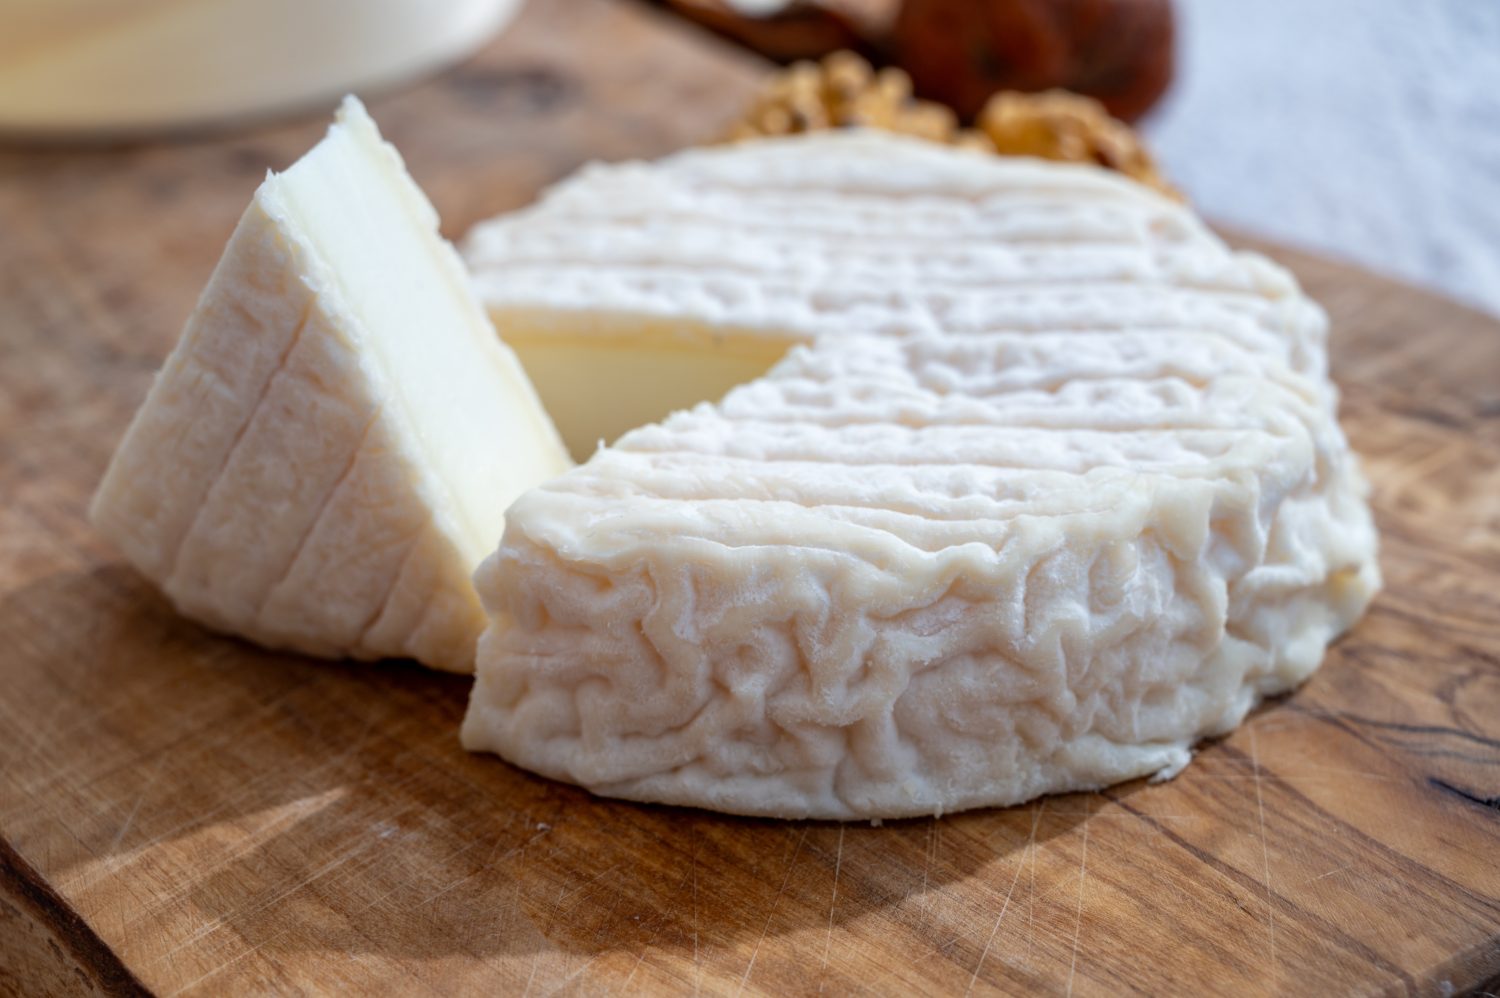 Raccolta di formaggi, formaggio bianco a pasta molle francese Perrail les Buissieres a base di latte di pecora dell'Aveyron, Francia da vicino